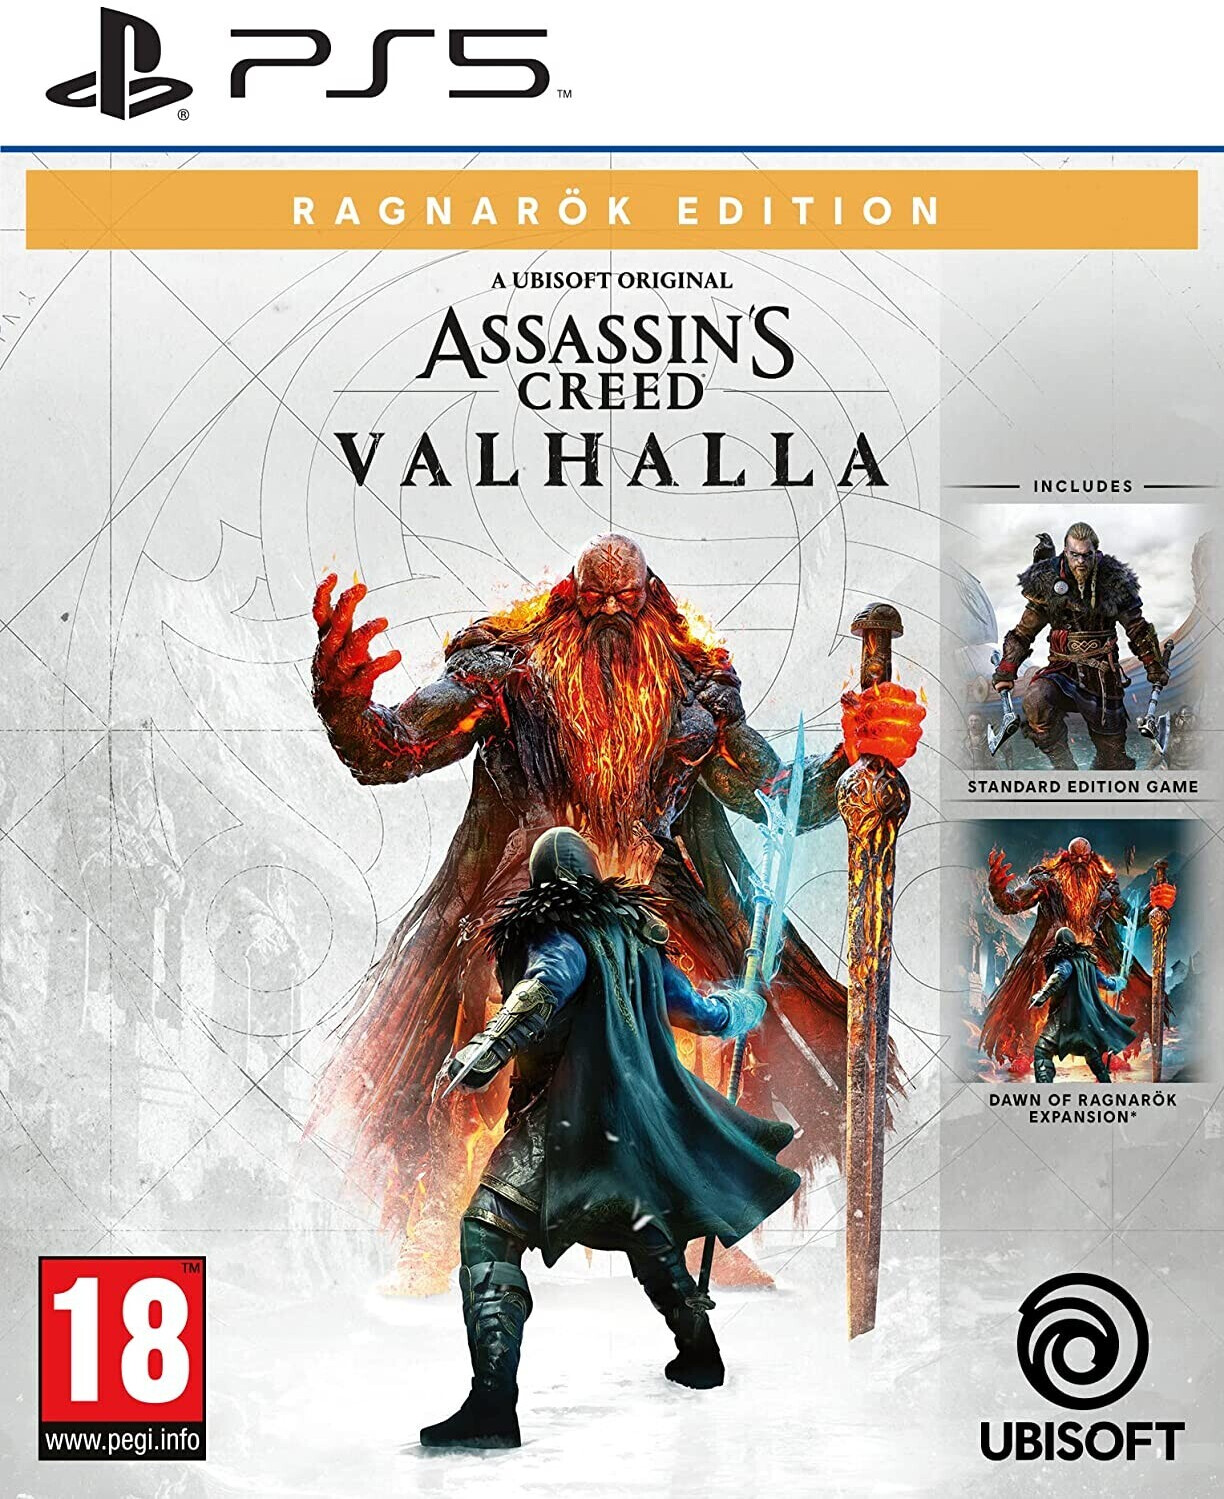 Buy Assassin's Creed: Valhalla - Ragnarök Edition (PS5) from £32.00 (Today)  – Best Deals on